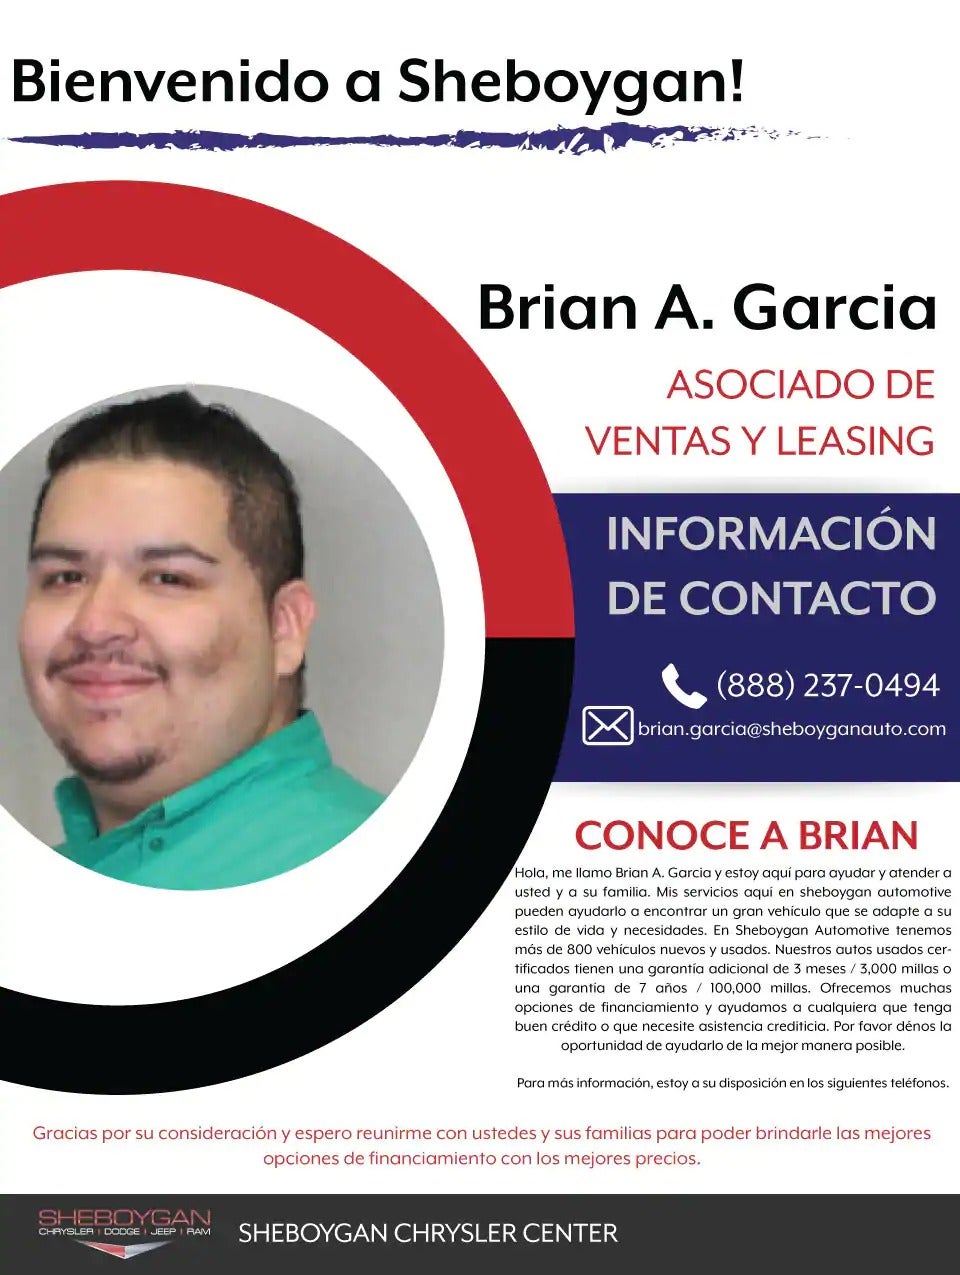 Brian A. Garcia asociado de ventas y leasing at Sheboygan Chrysler Center in Sheboygan WI